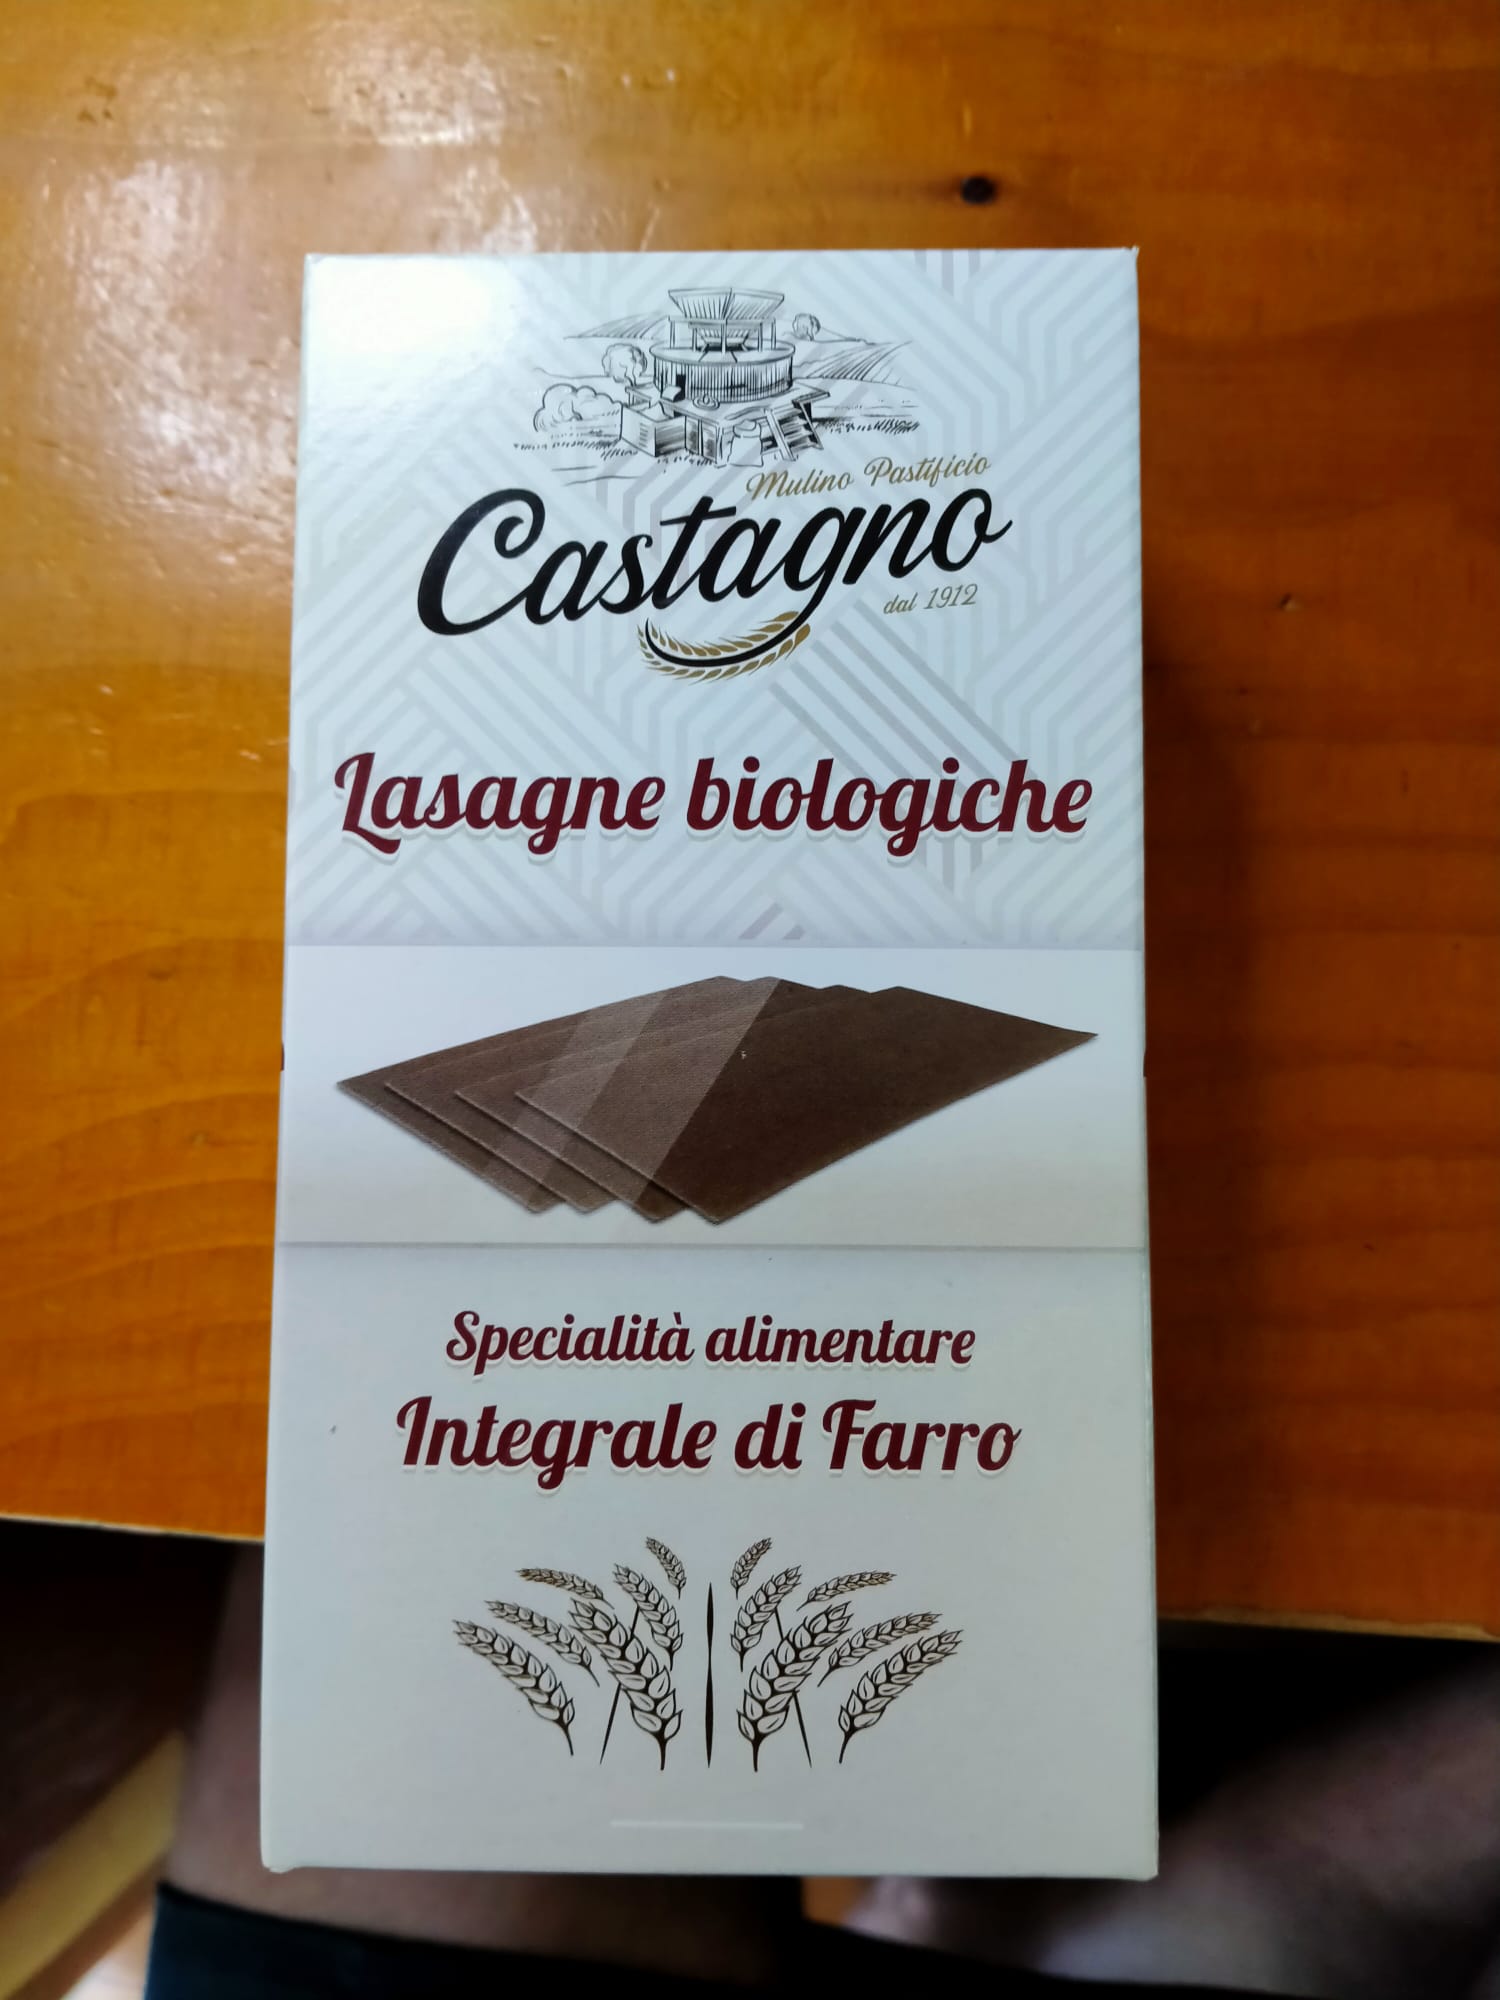 Emmer-lasagne volkoren van Castagno, 6 x 500 g